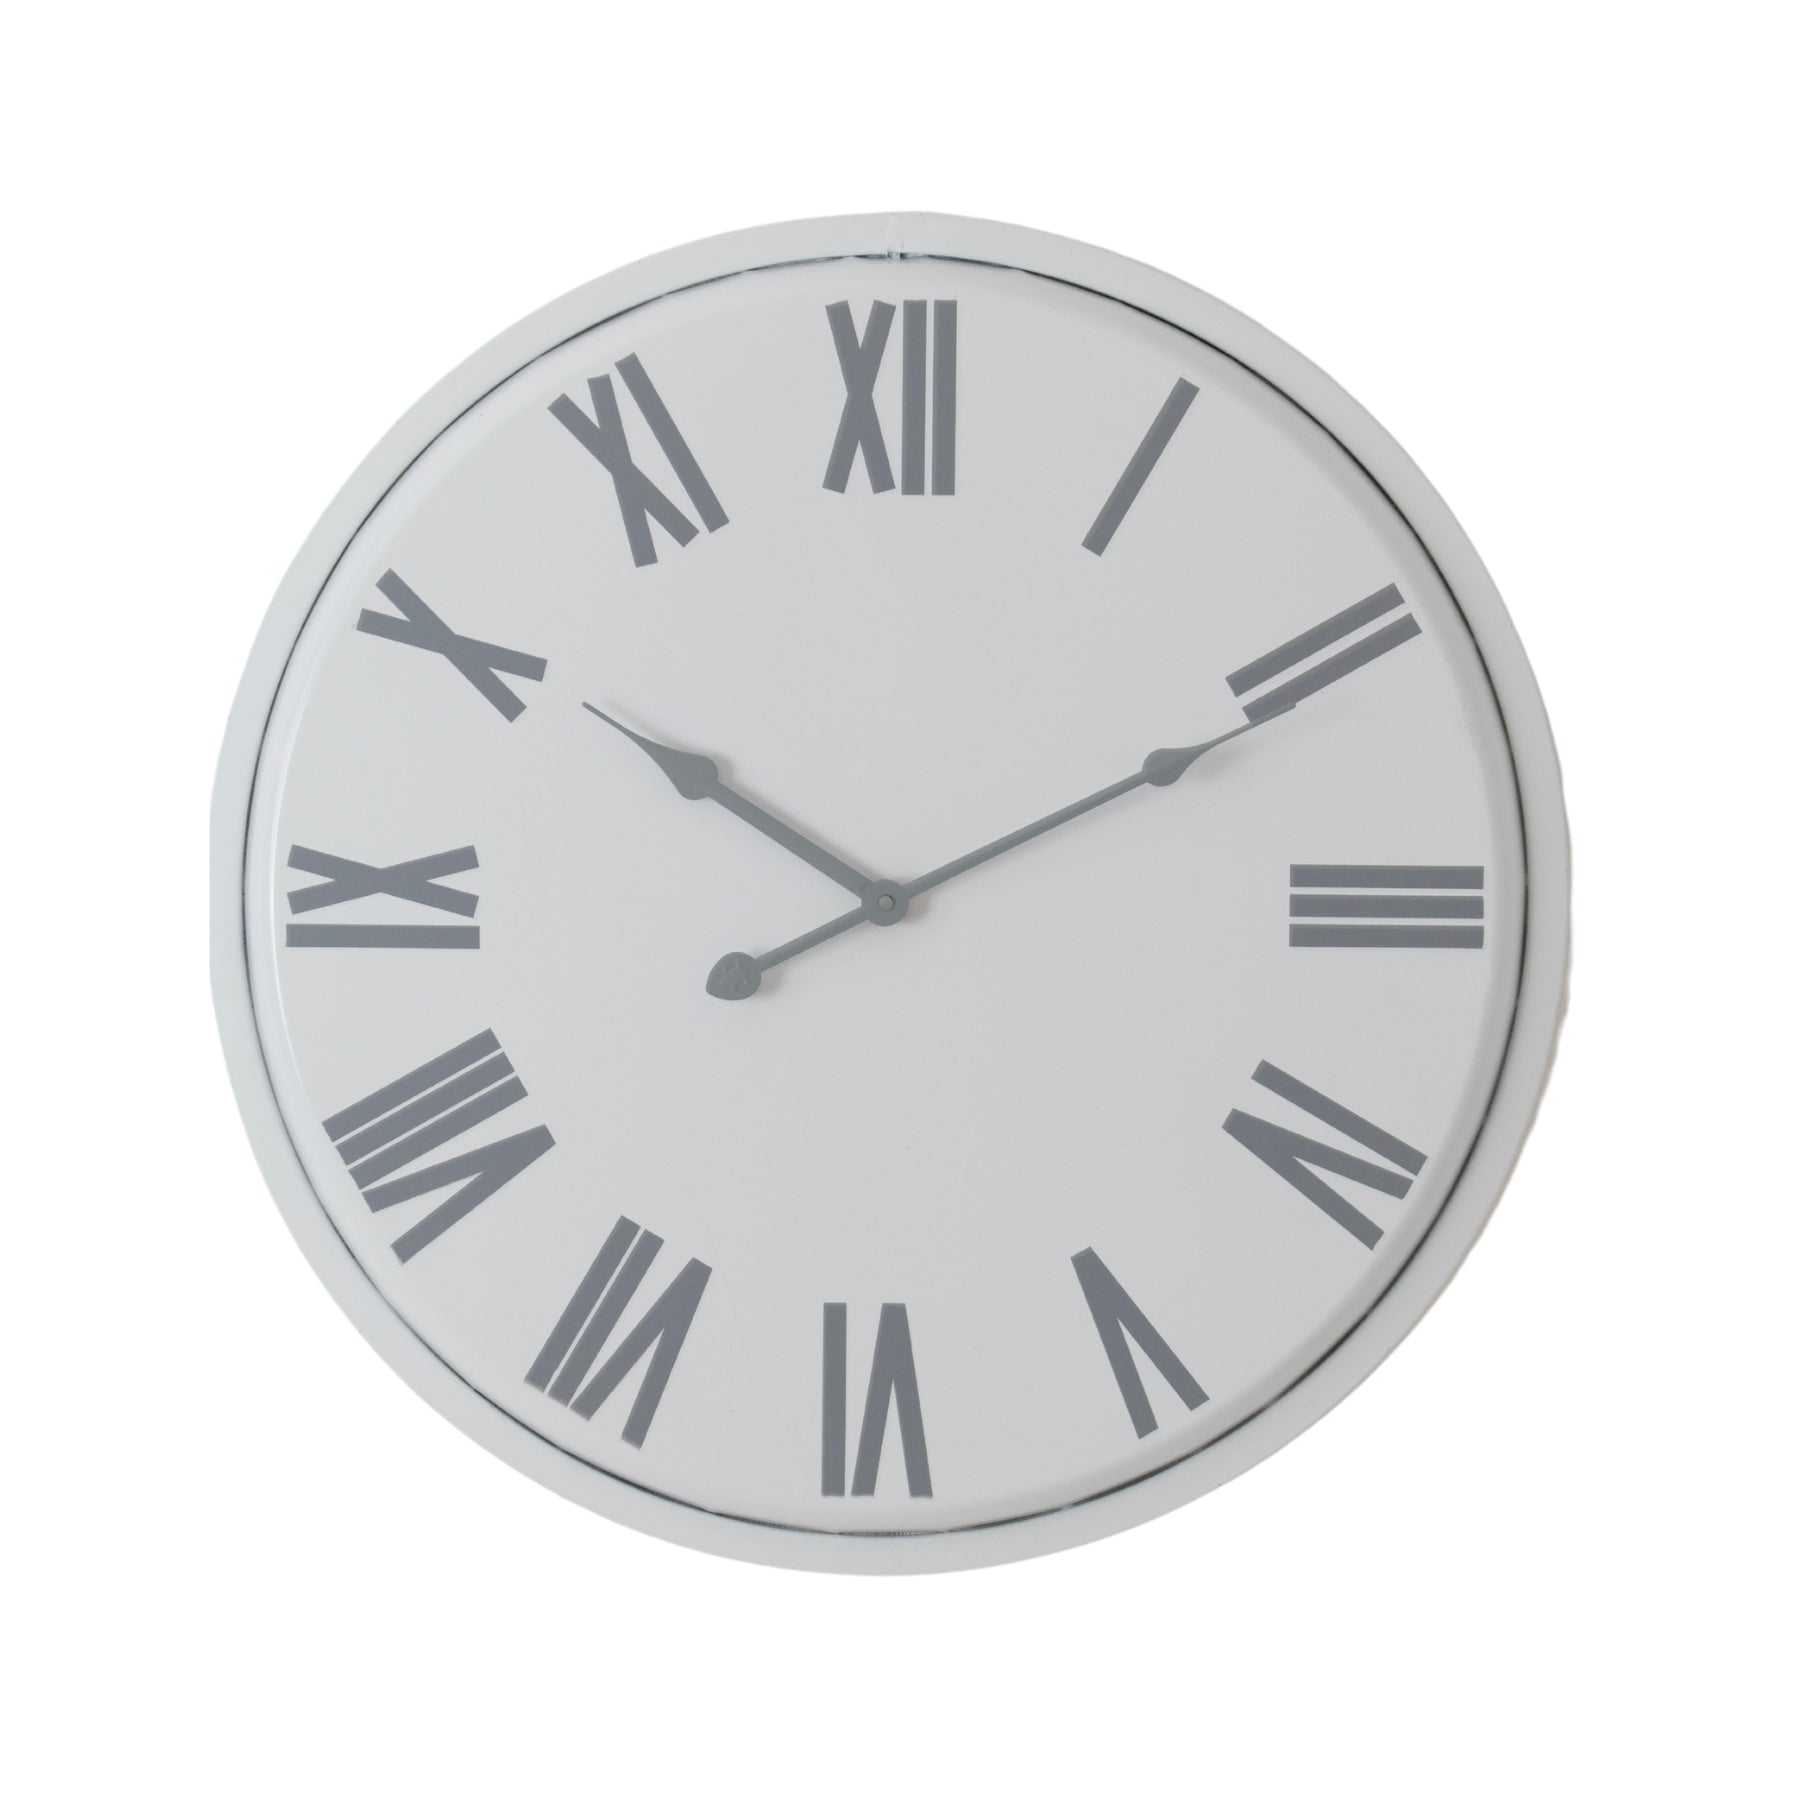 Flemings Wall Clock-product